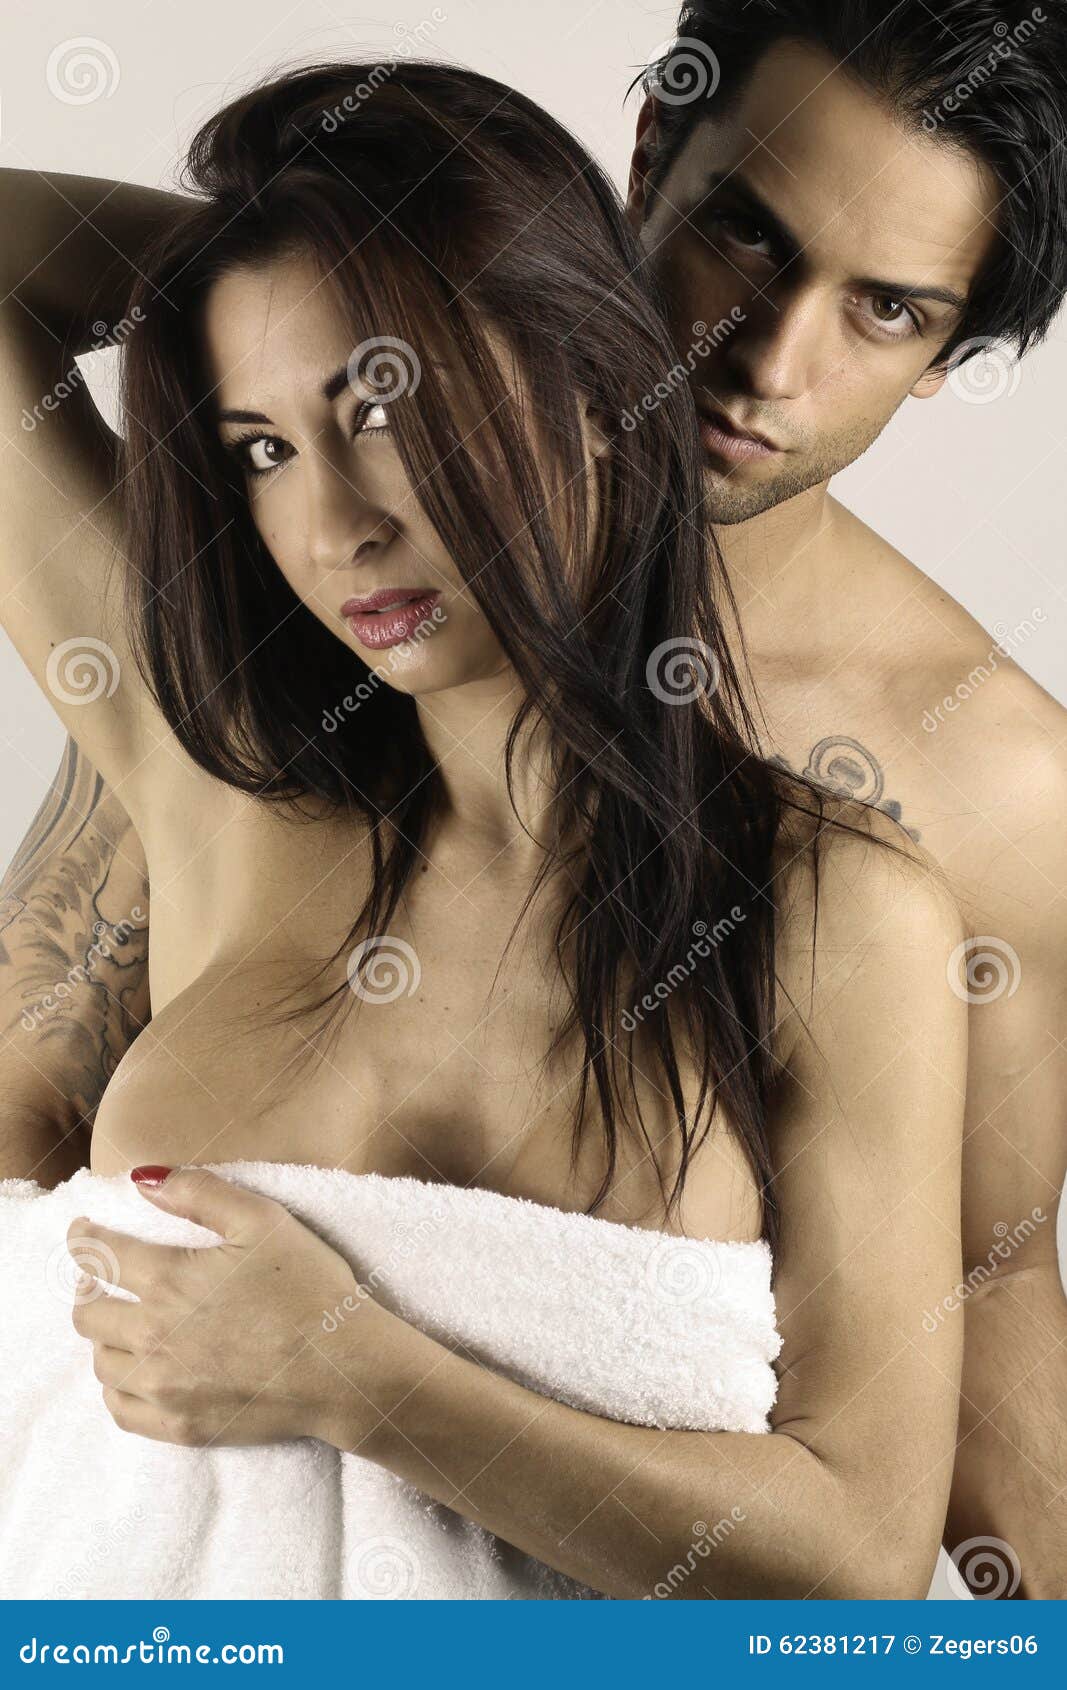 damion cain share sexy nude couple photos photos